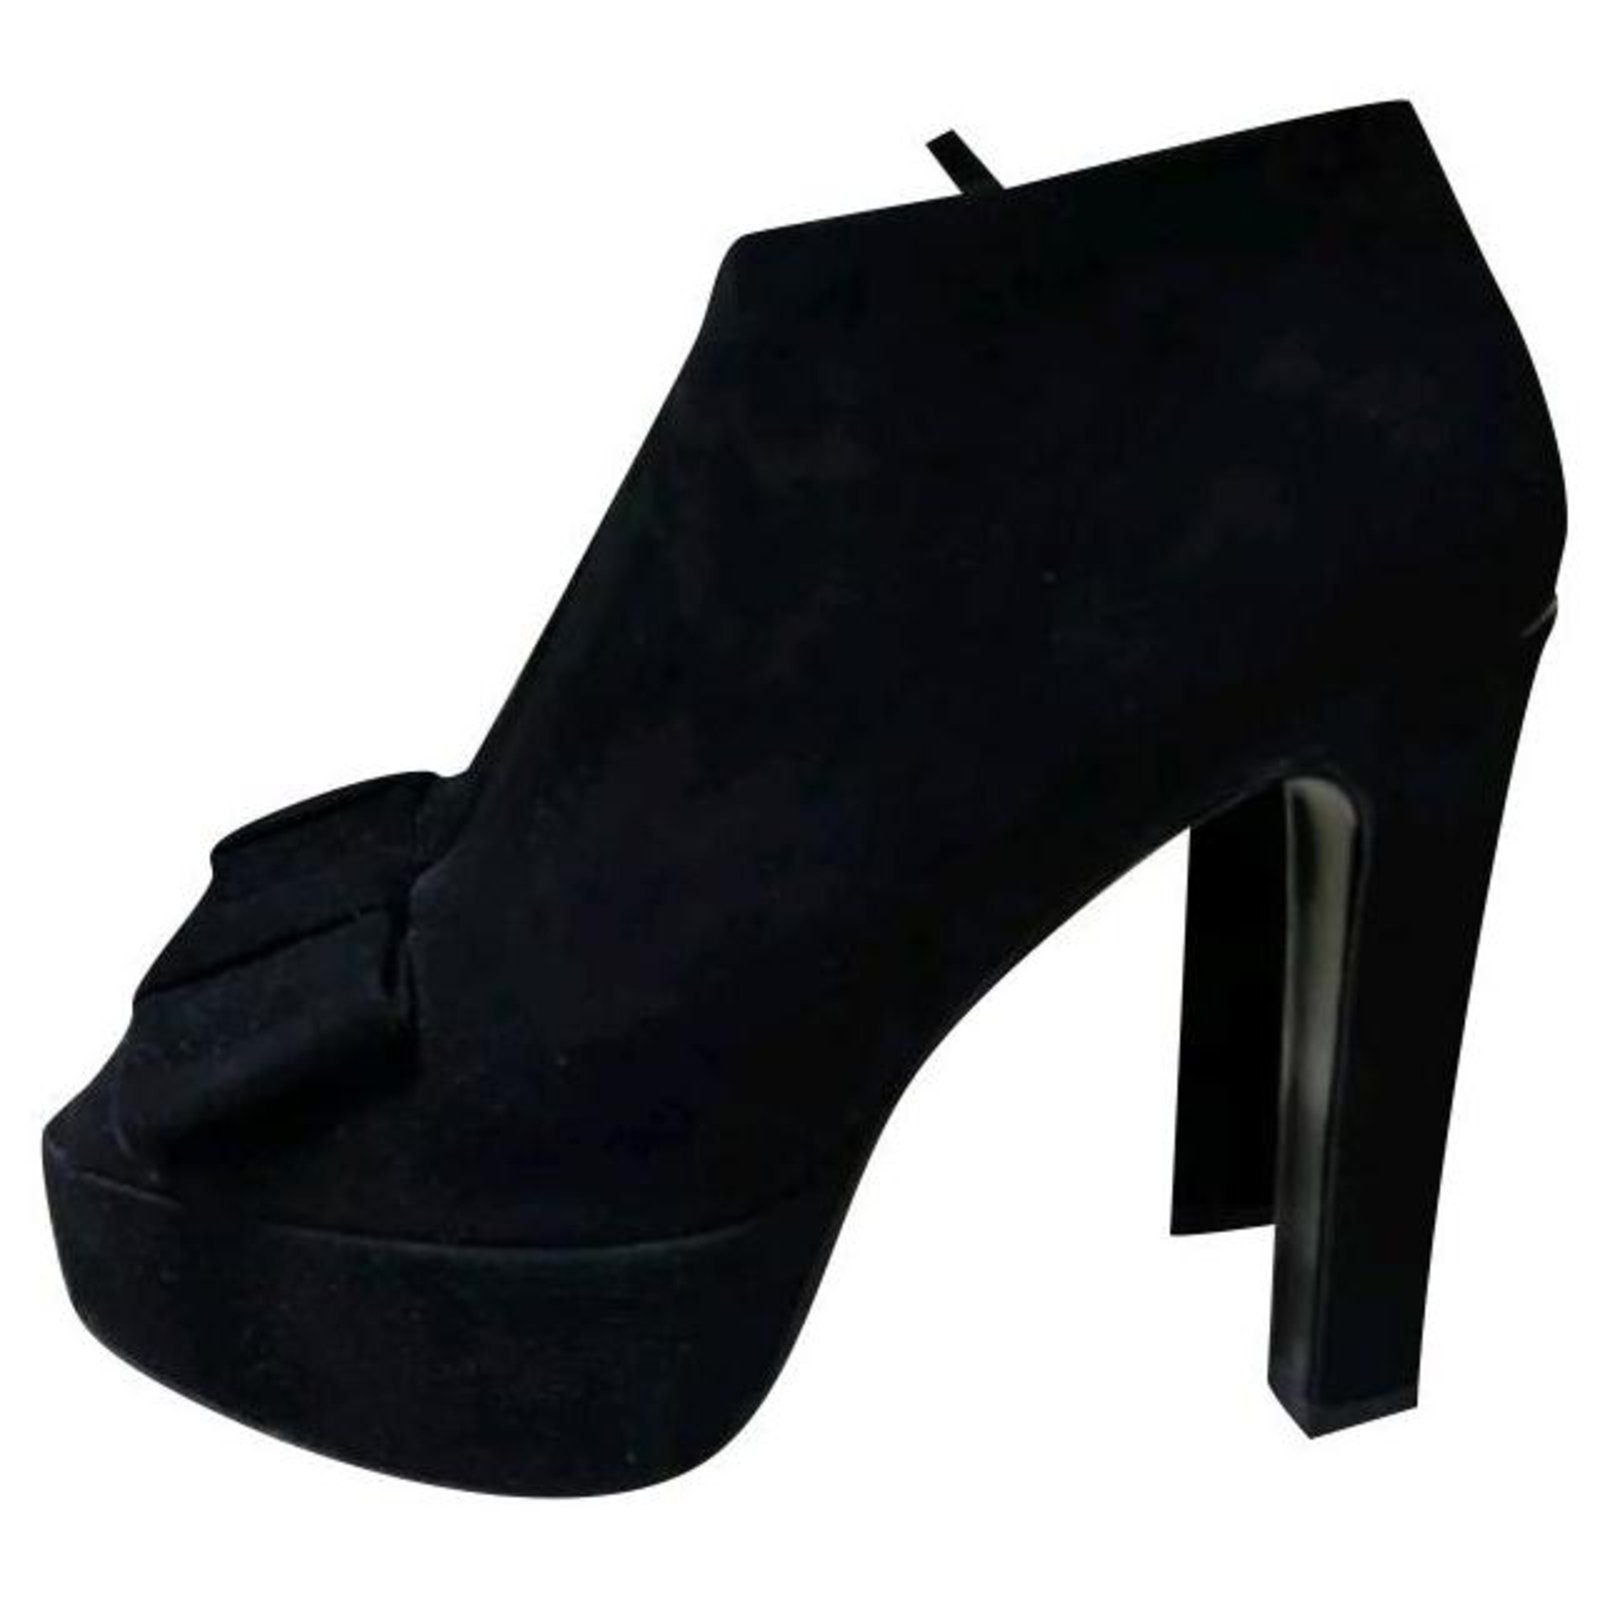 Louis Vuitton High Heels Sandals Black Suede Pumps Platform Shoes